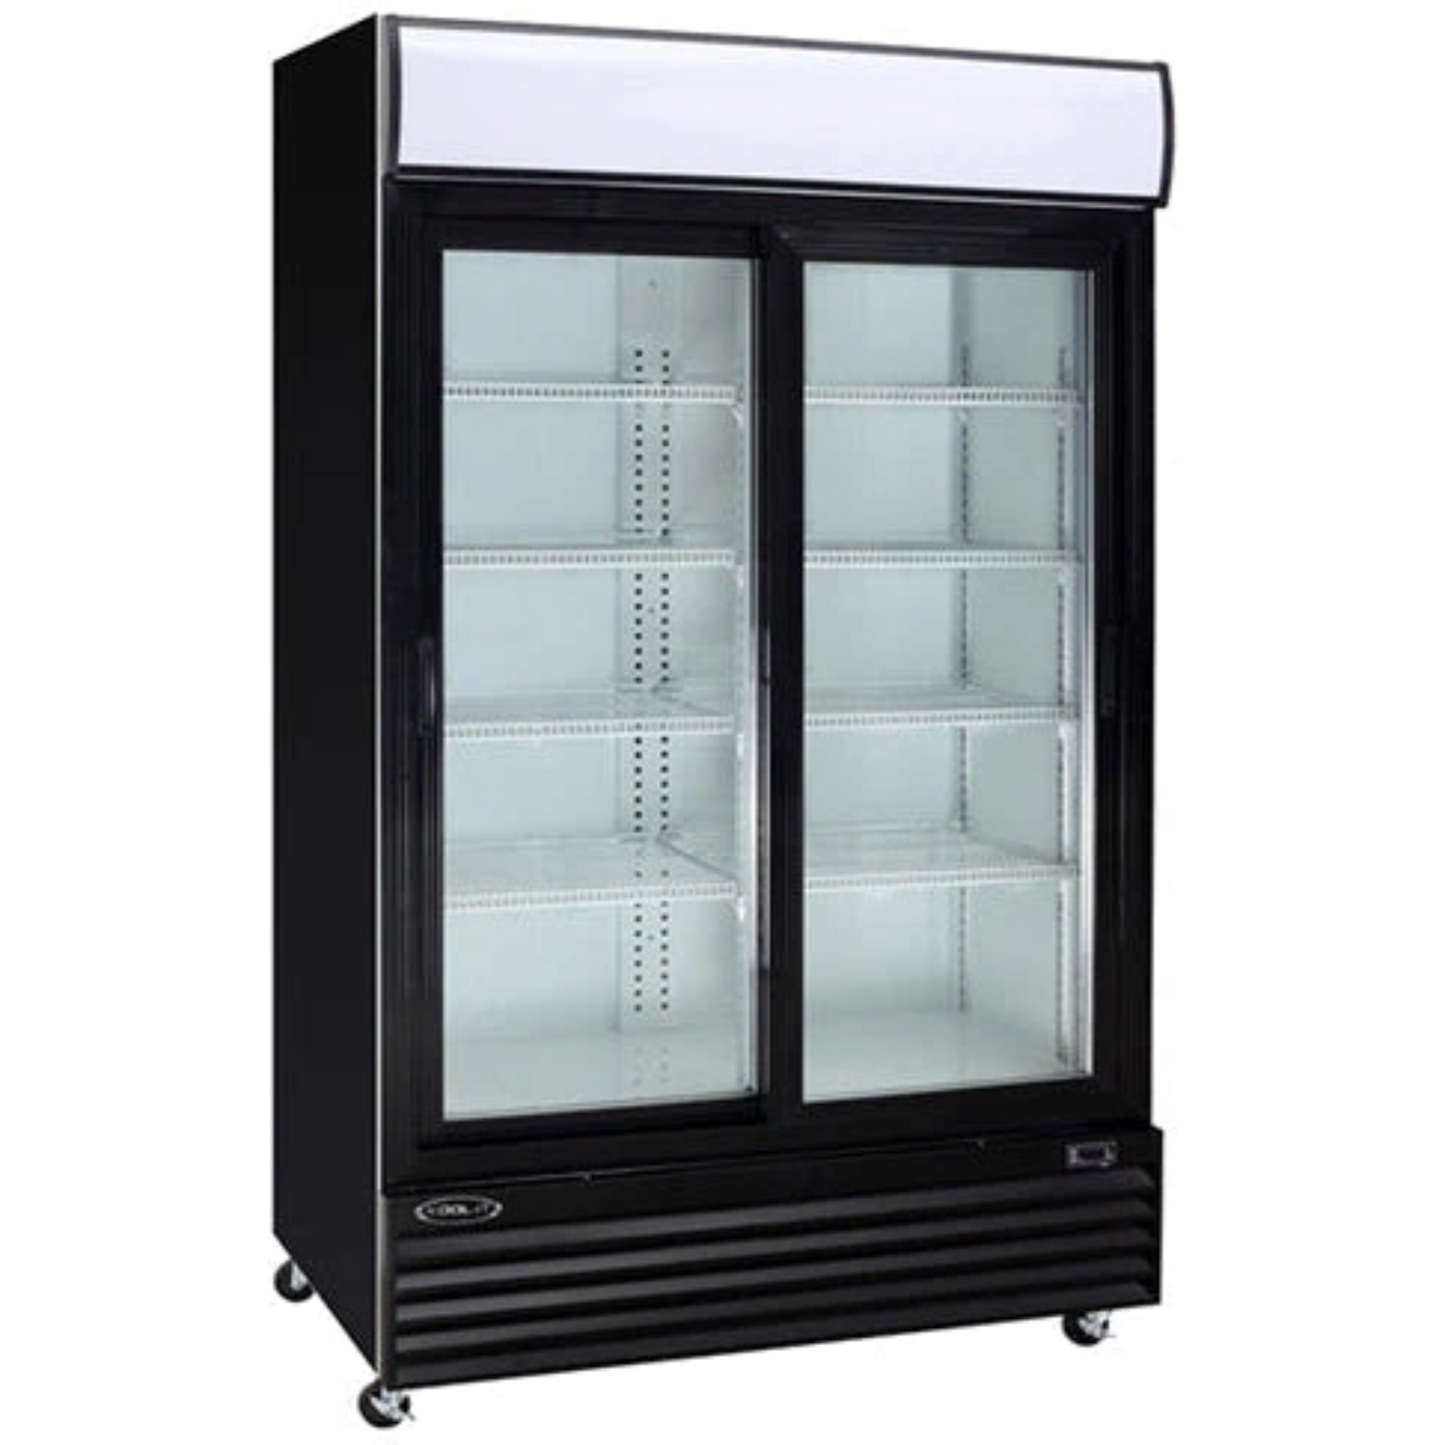 Kool-It KSM-42 52" Double Sliding Glass Door Merchandiser Refrigerator